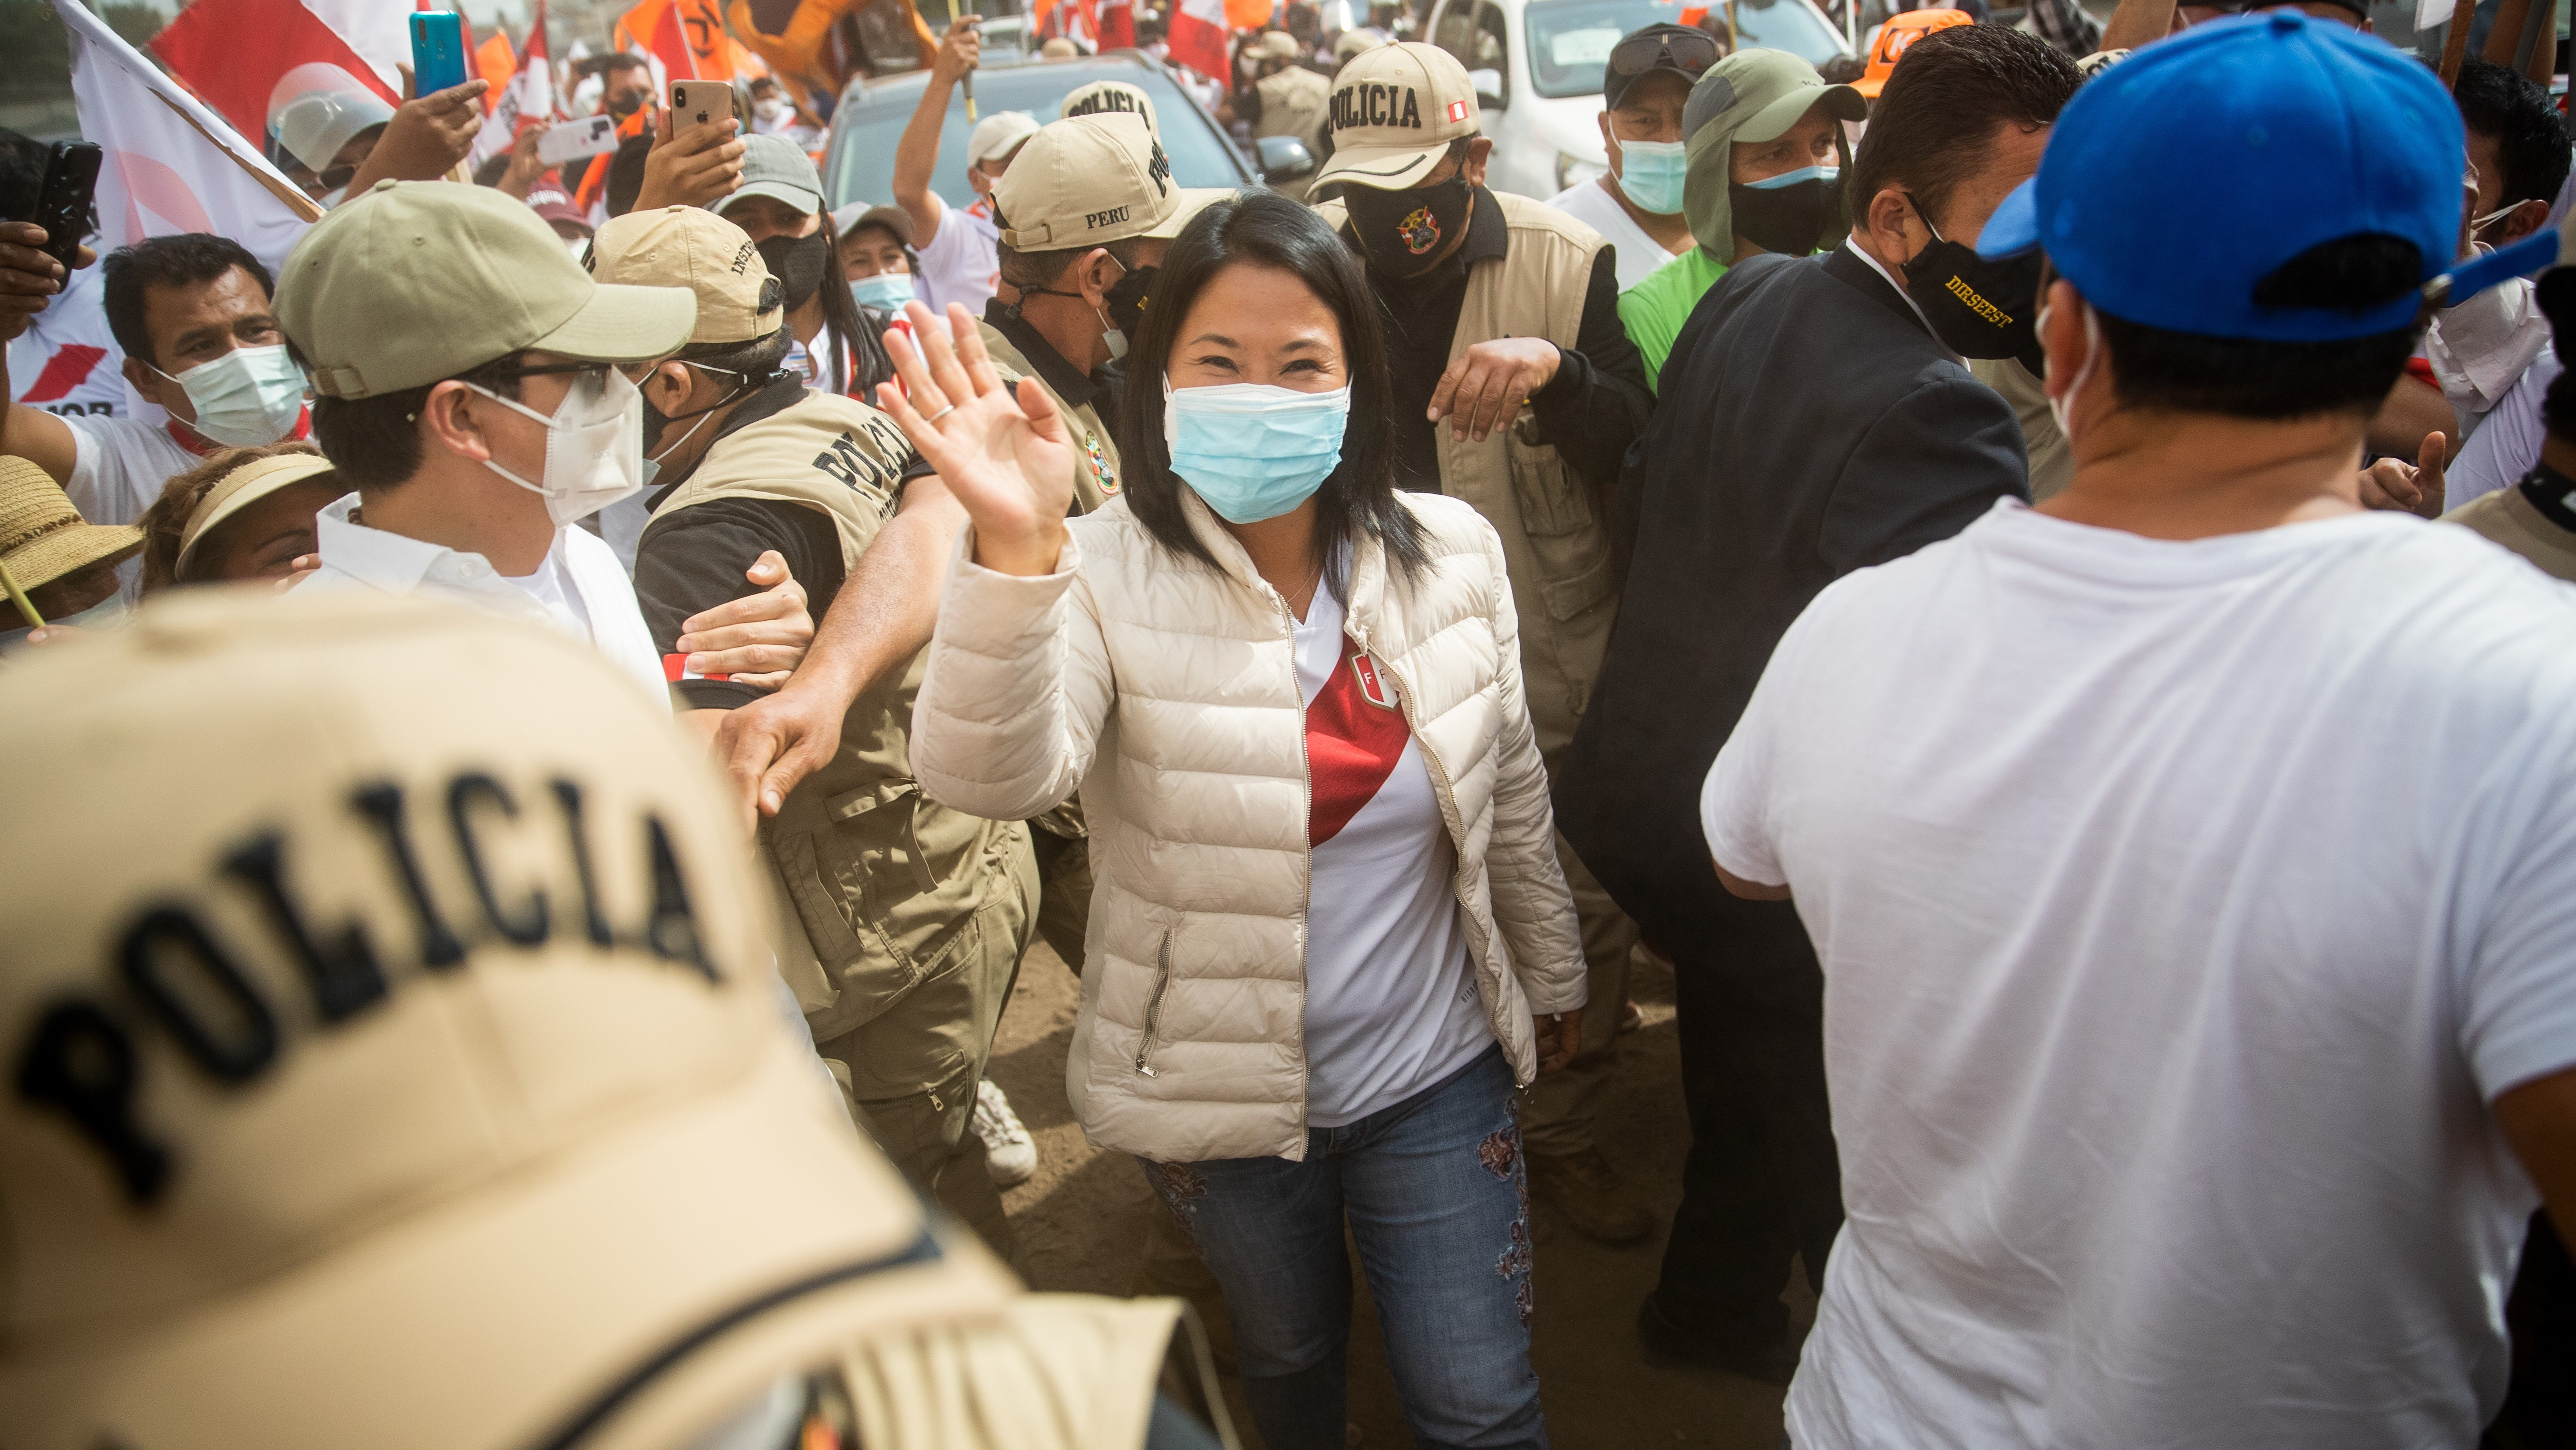 Los primeros resultados en Perú ponen en cabeza a Fujimori pero con un resultado muy ajustado